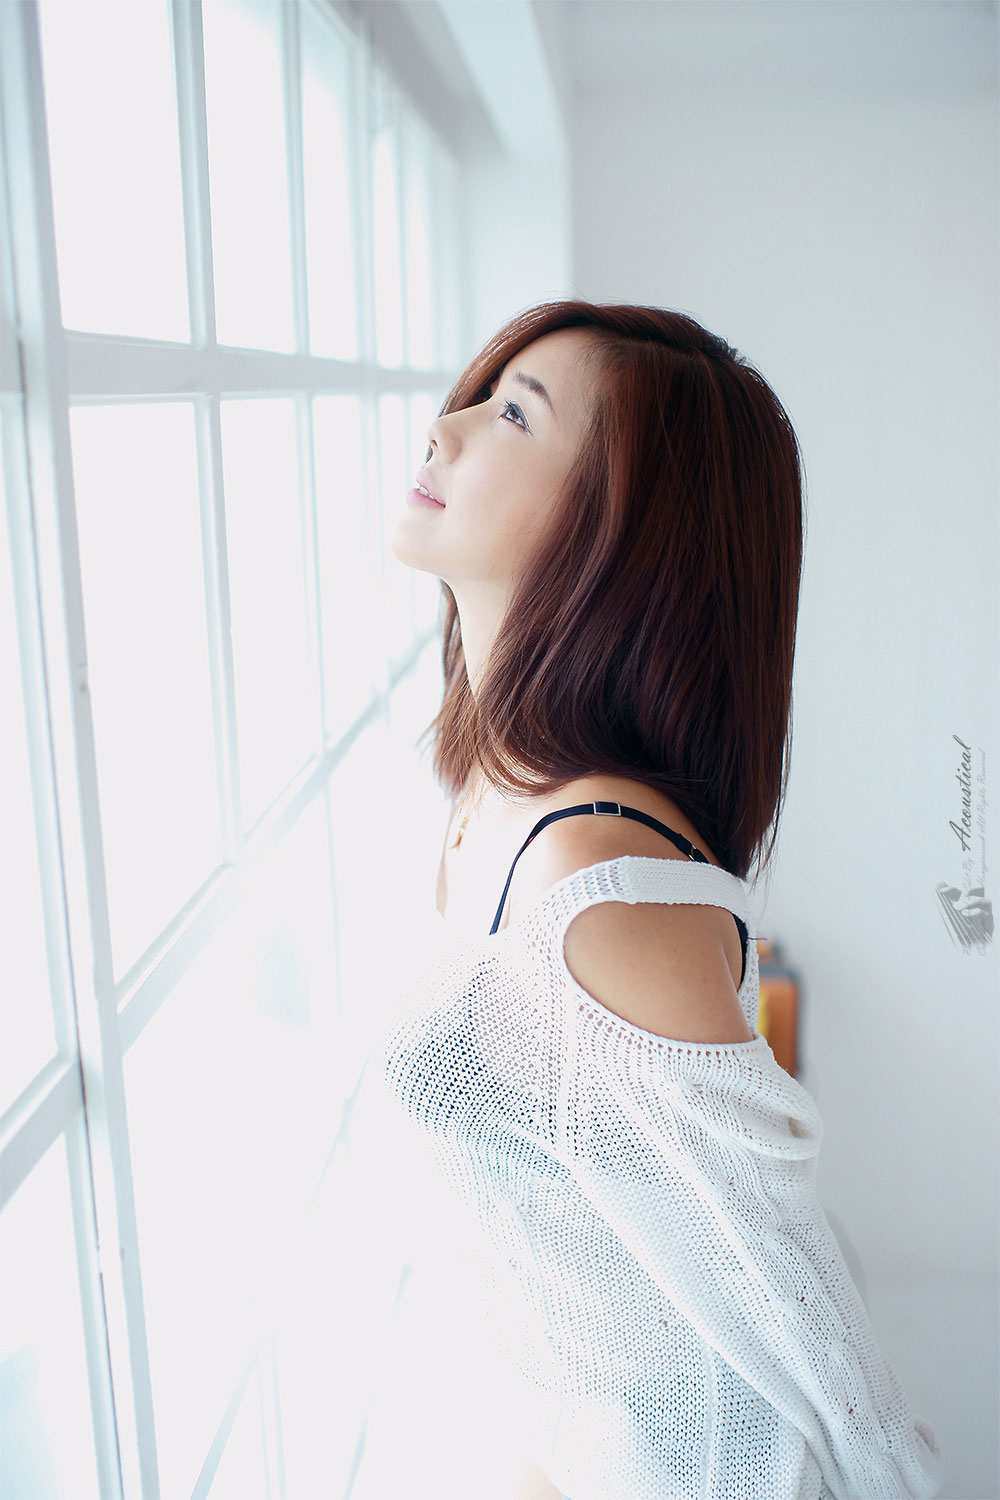 Cute Korean model Kim Ha Yul